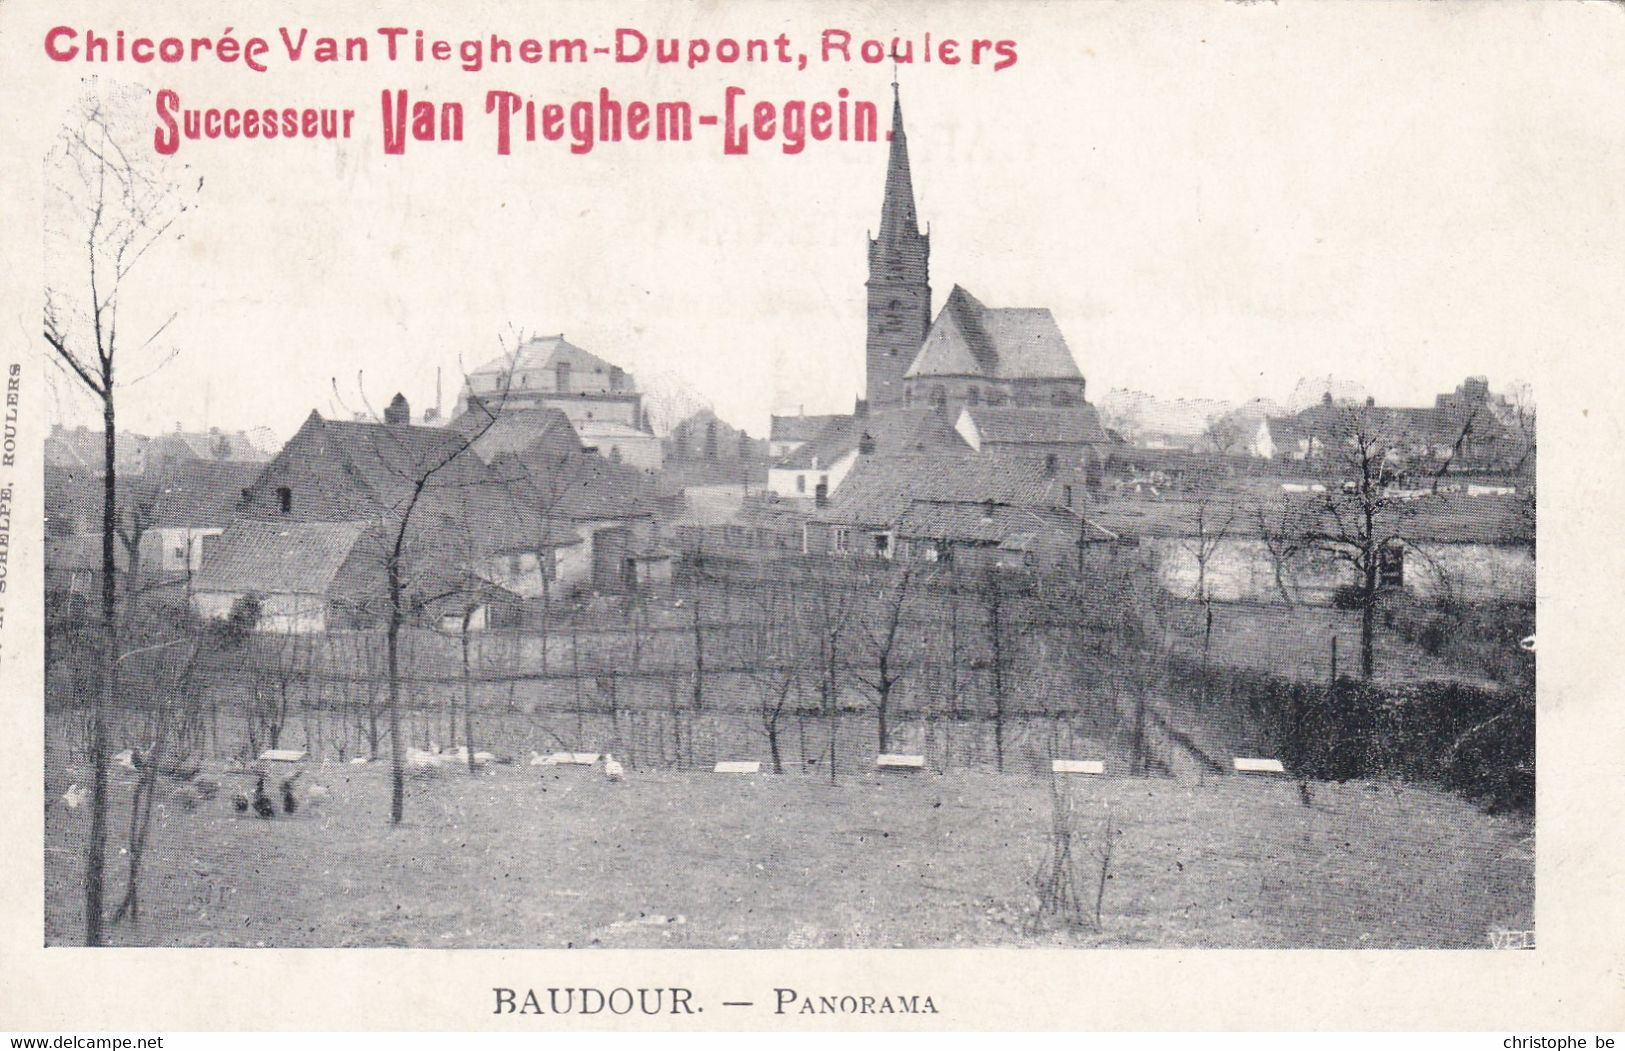 Baudour, Panorama (pk75697) - Saint-Ghislain